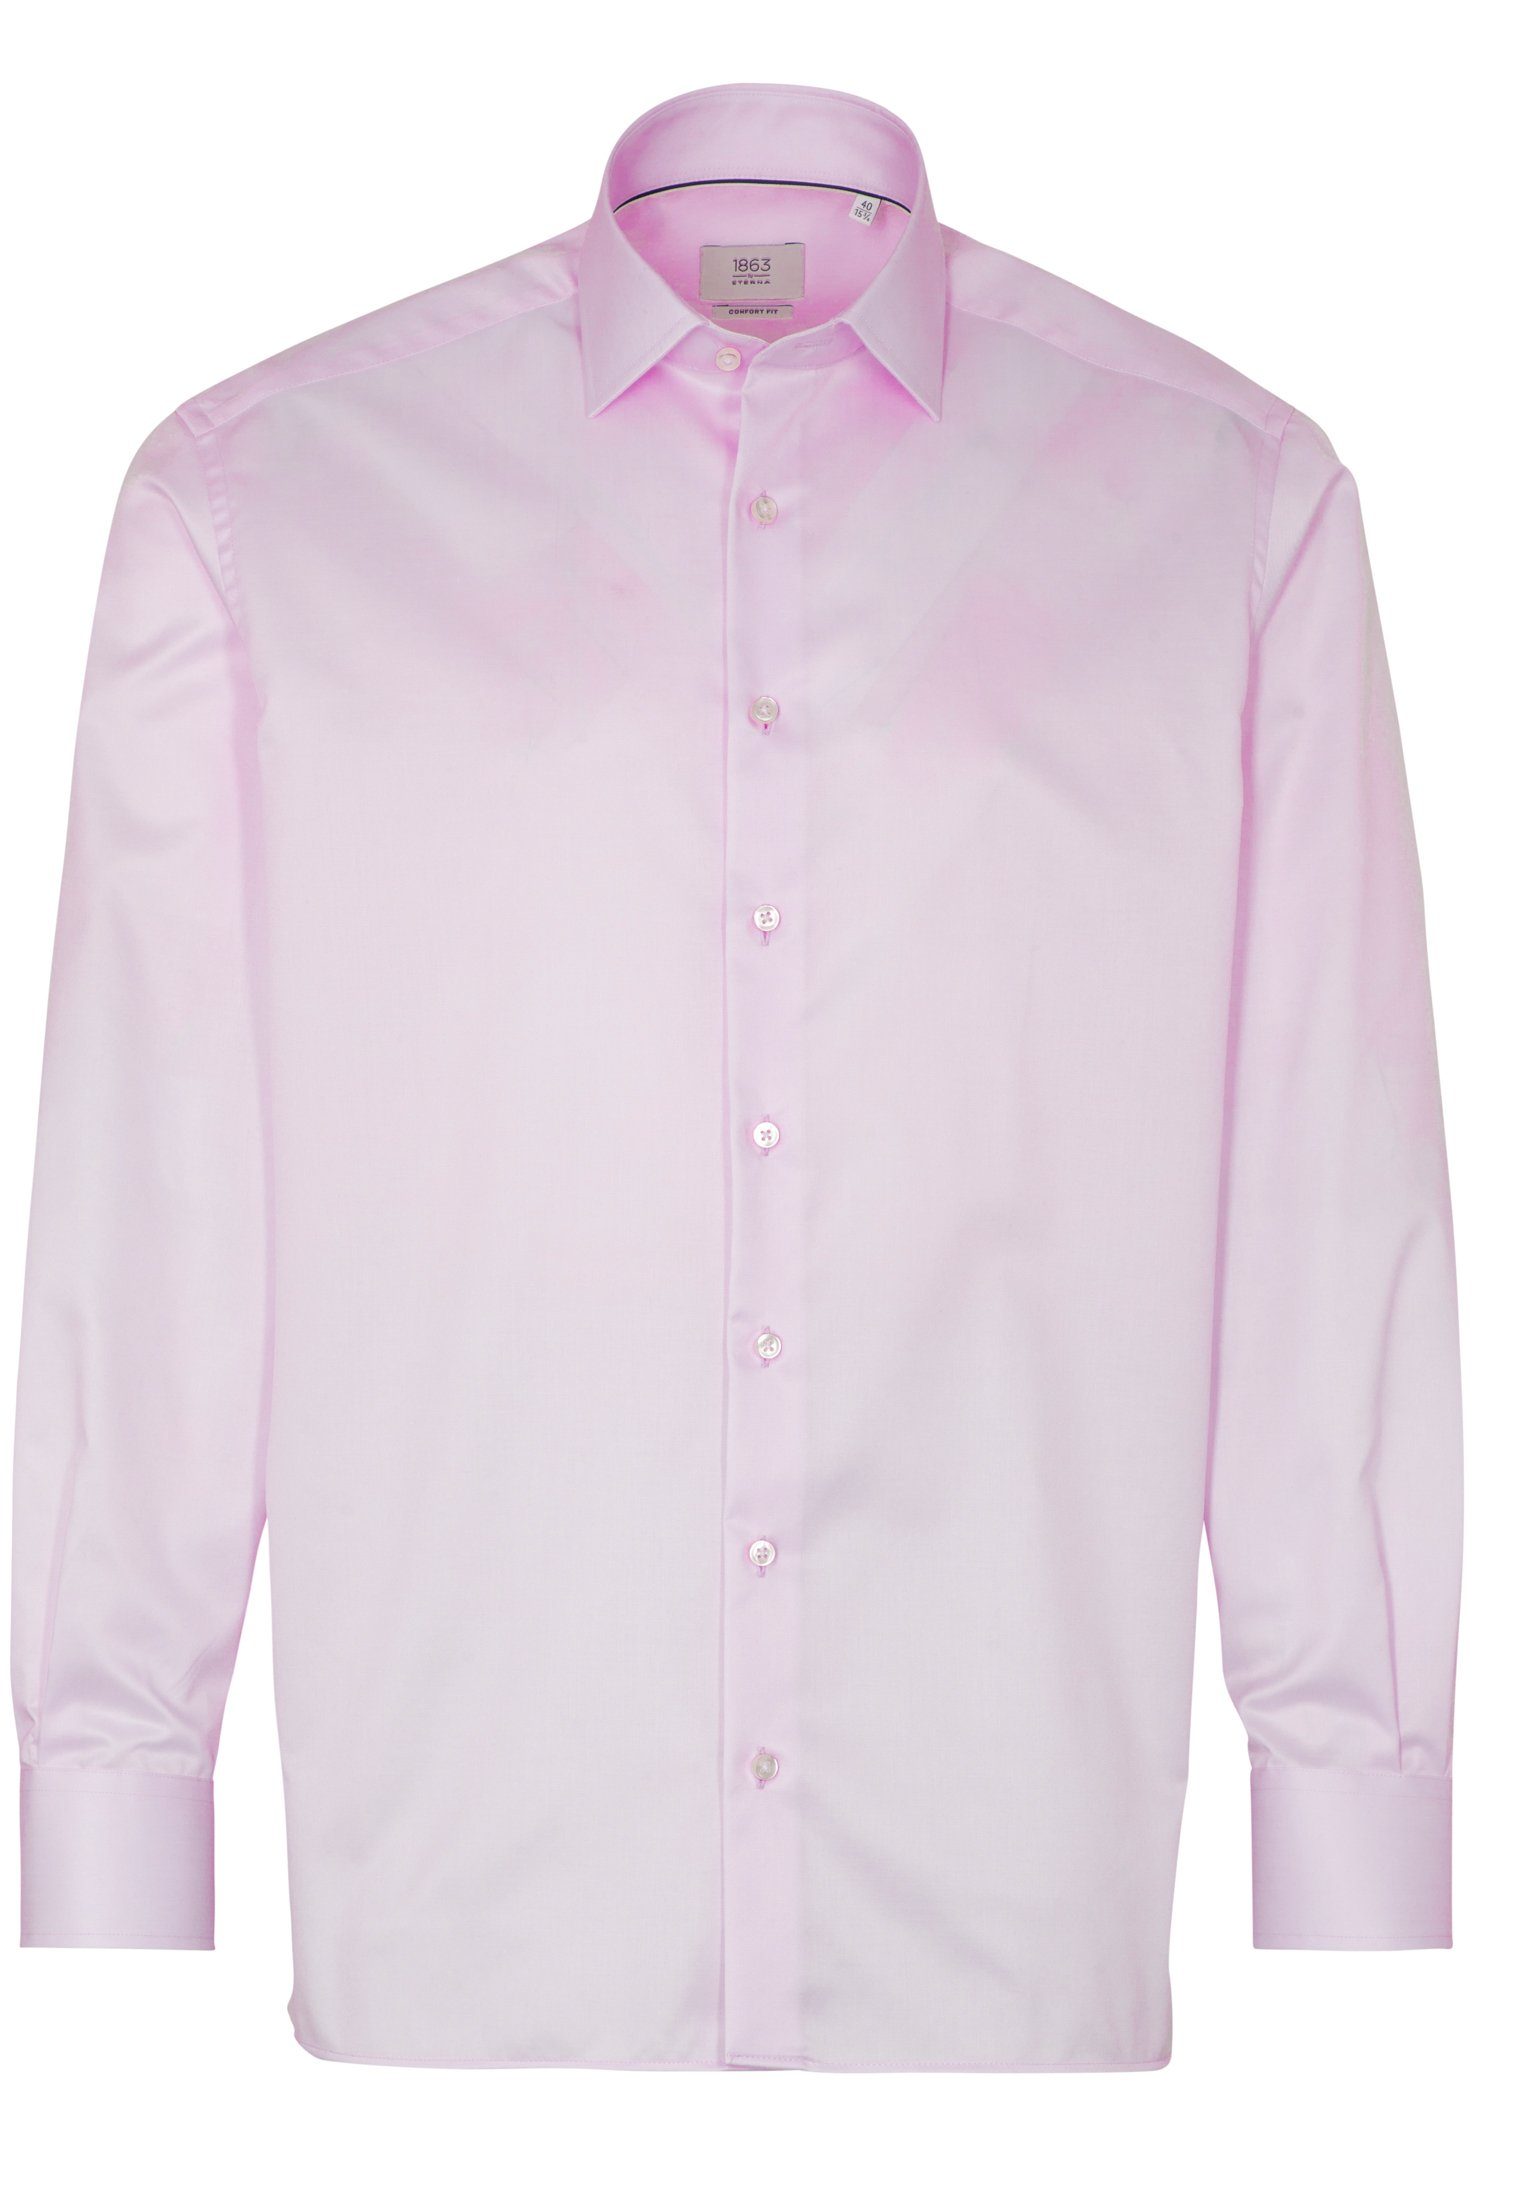 FIT COMFORT Eterna Langarmhemd rosa